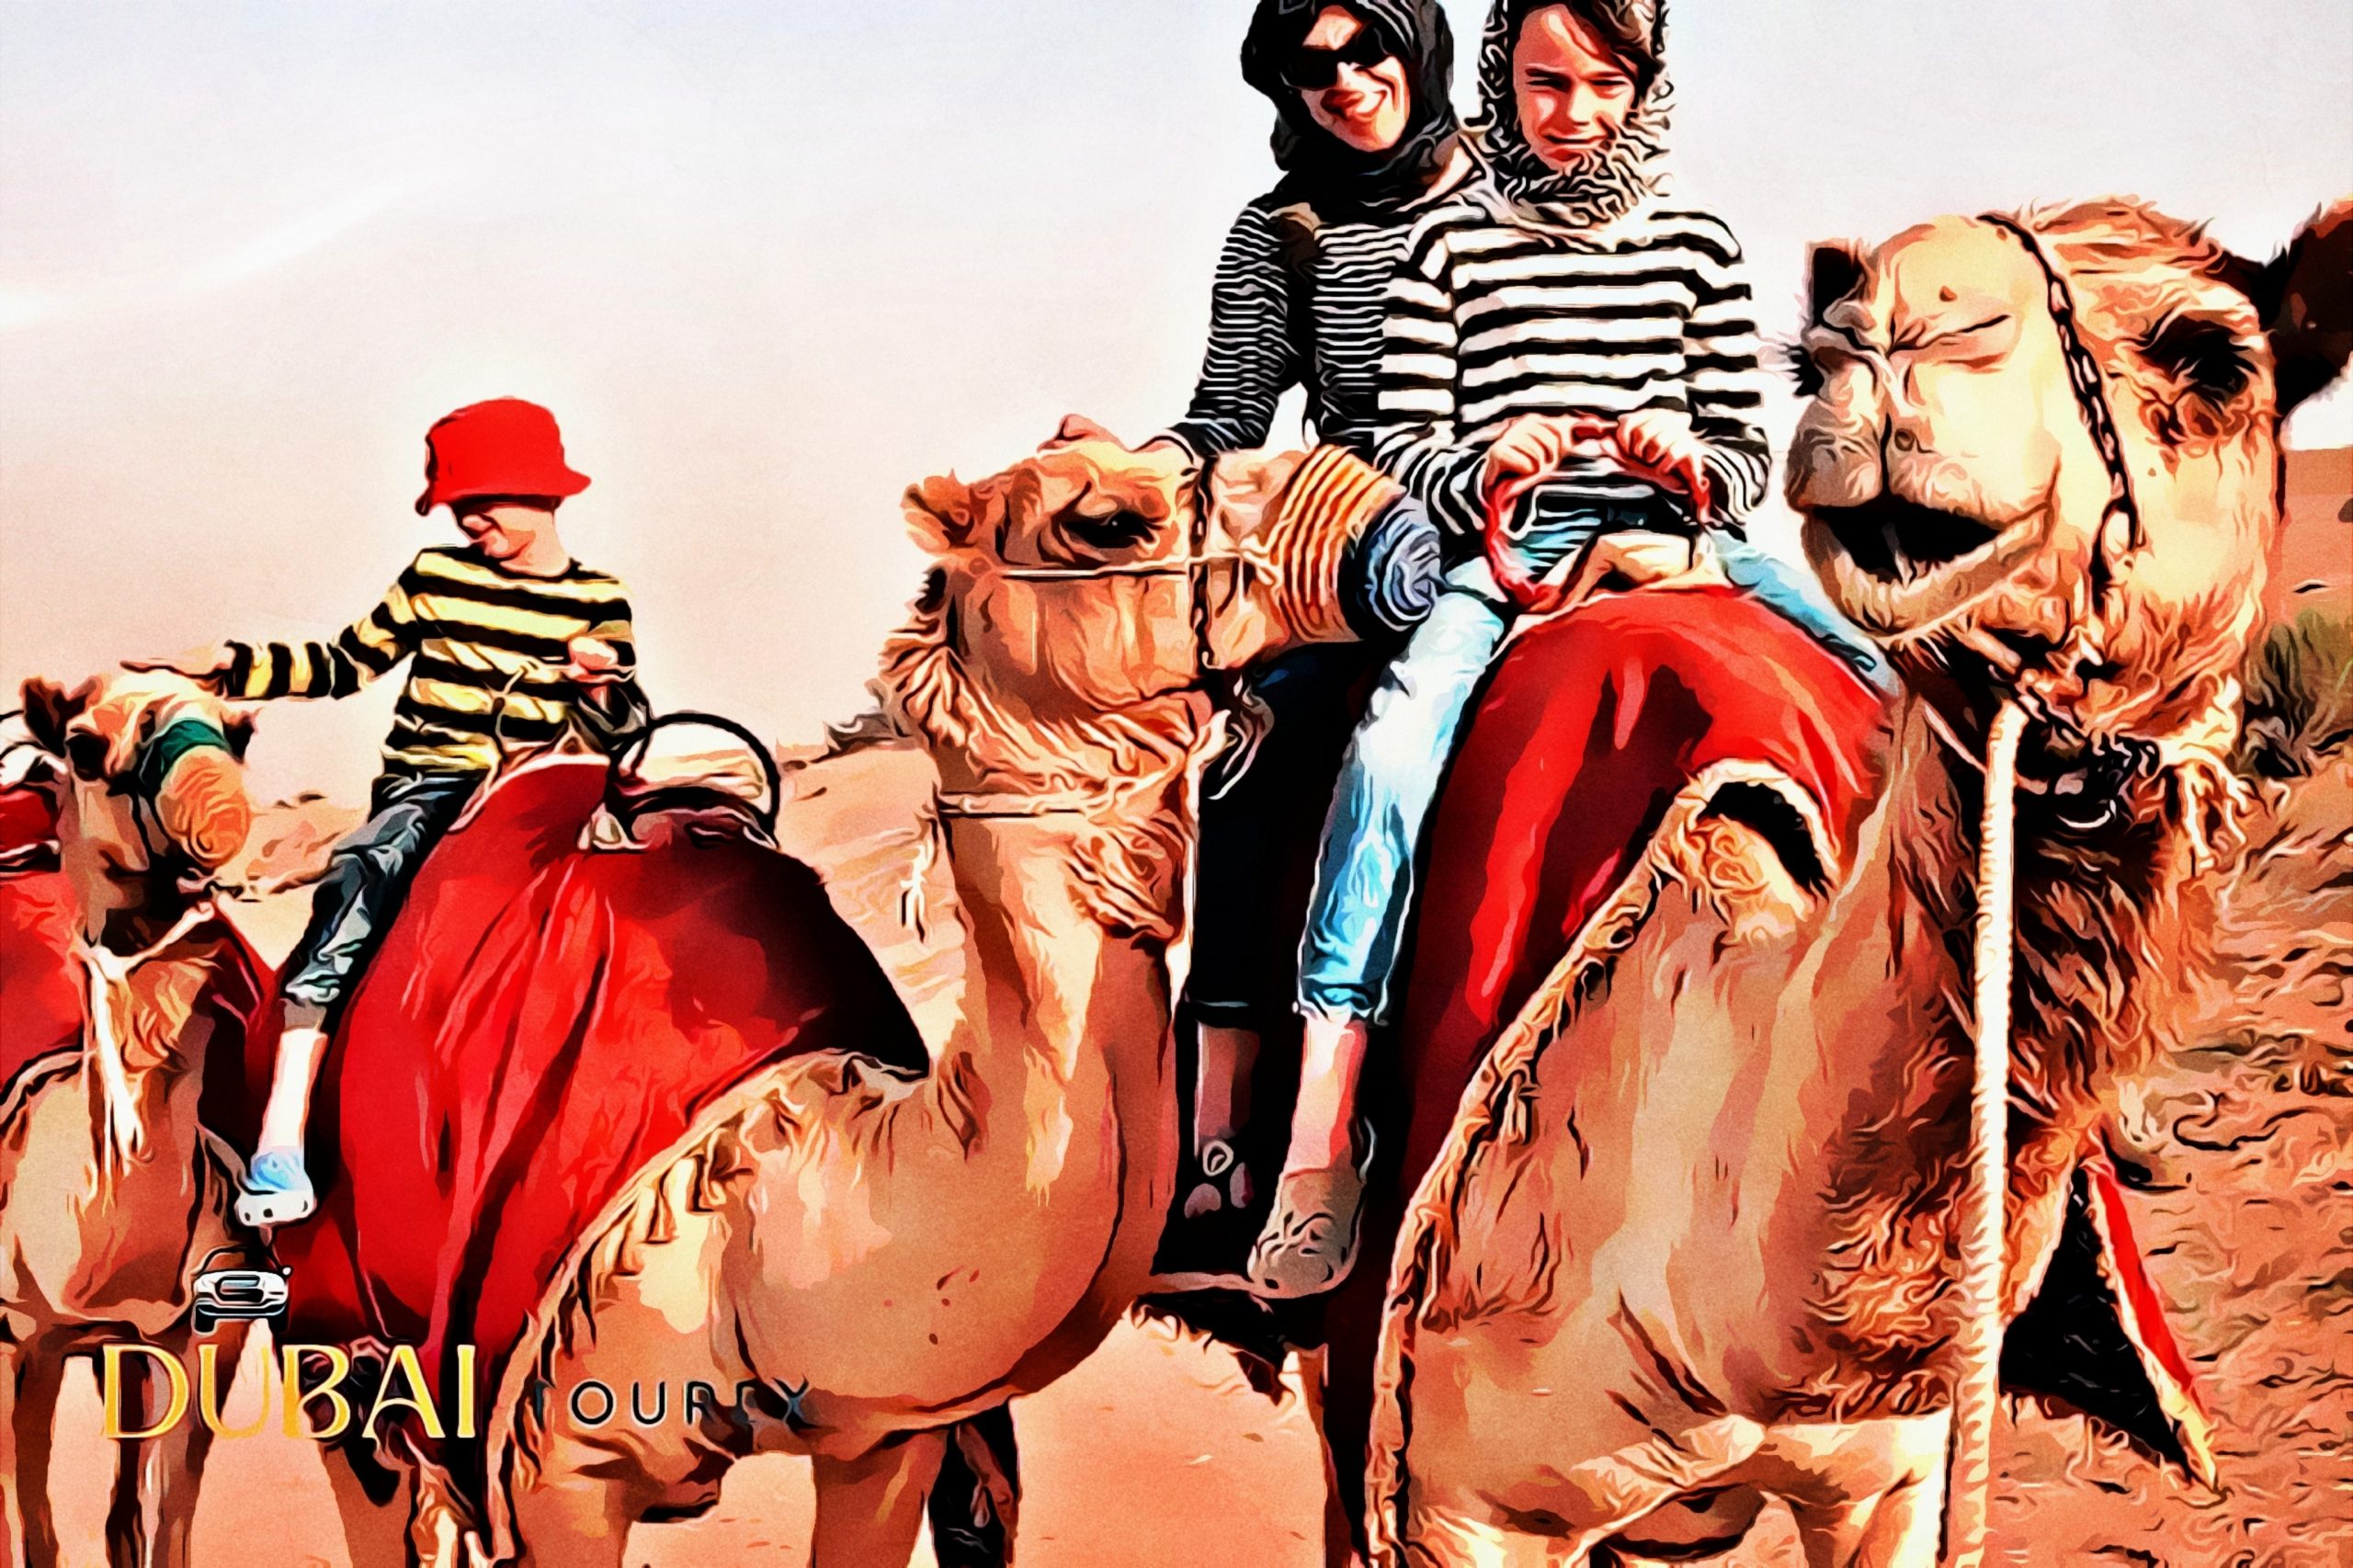 Camel Desert Safari Dubai